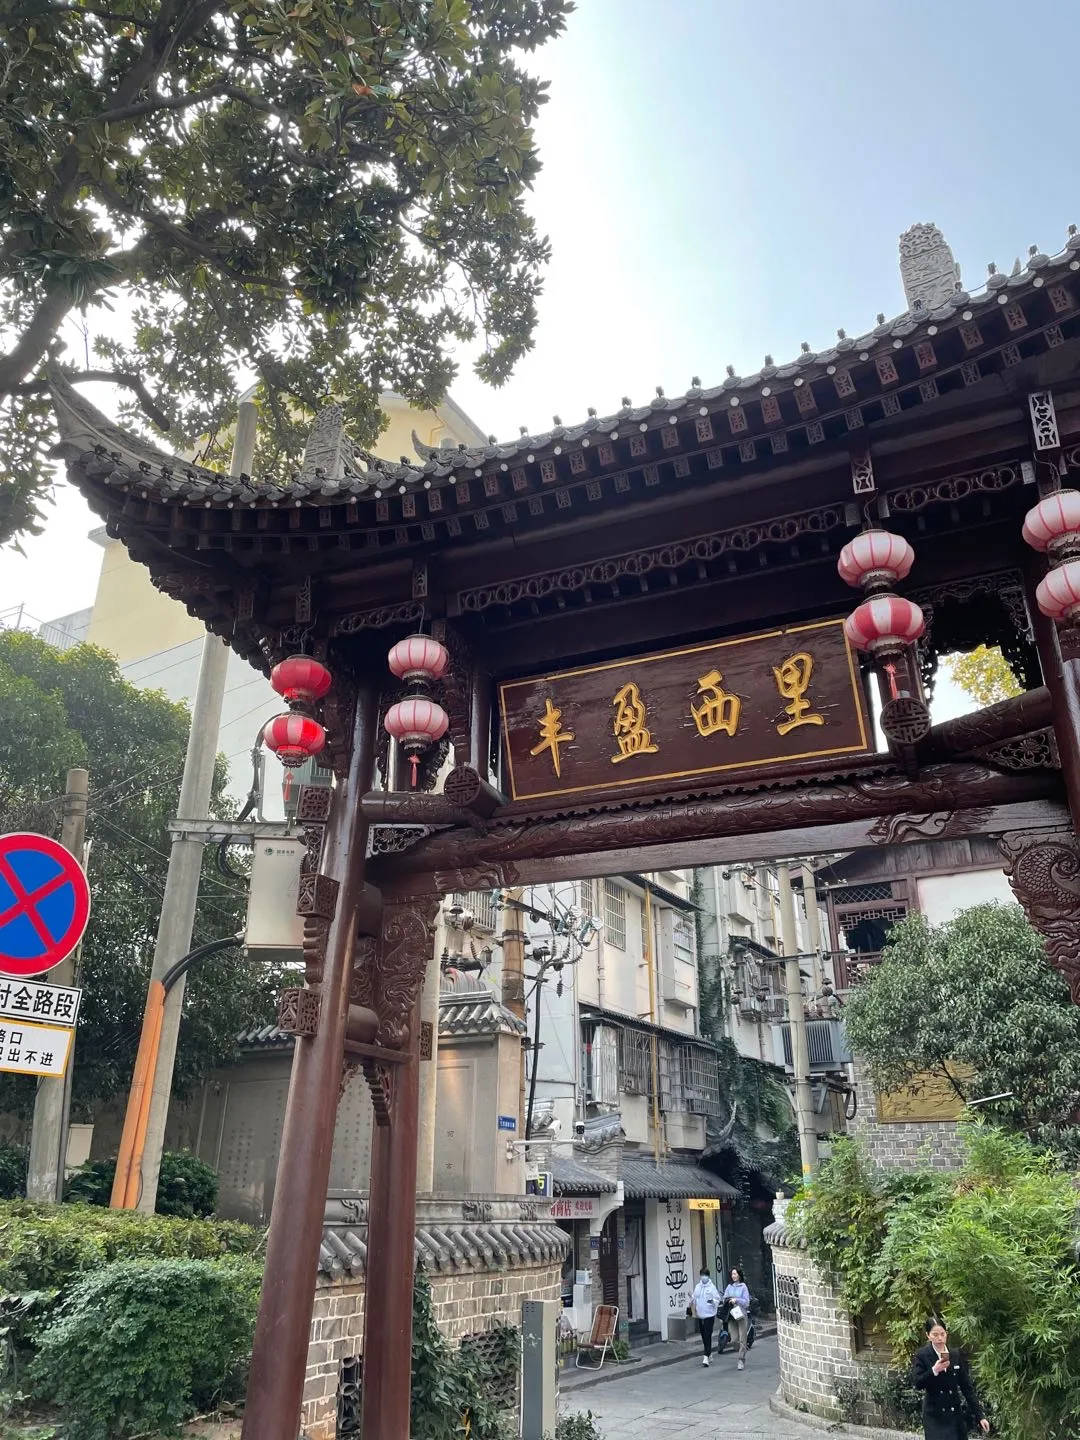 广州香雪牌坊小巷子图片